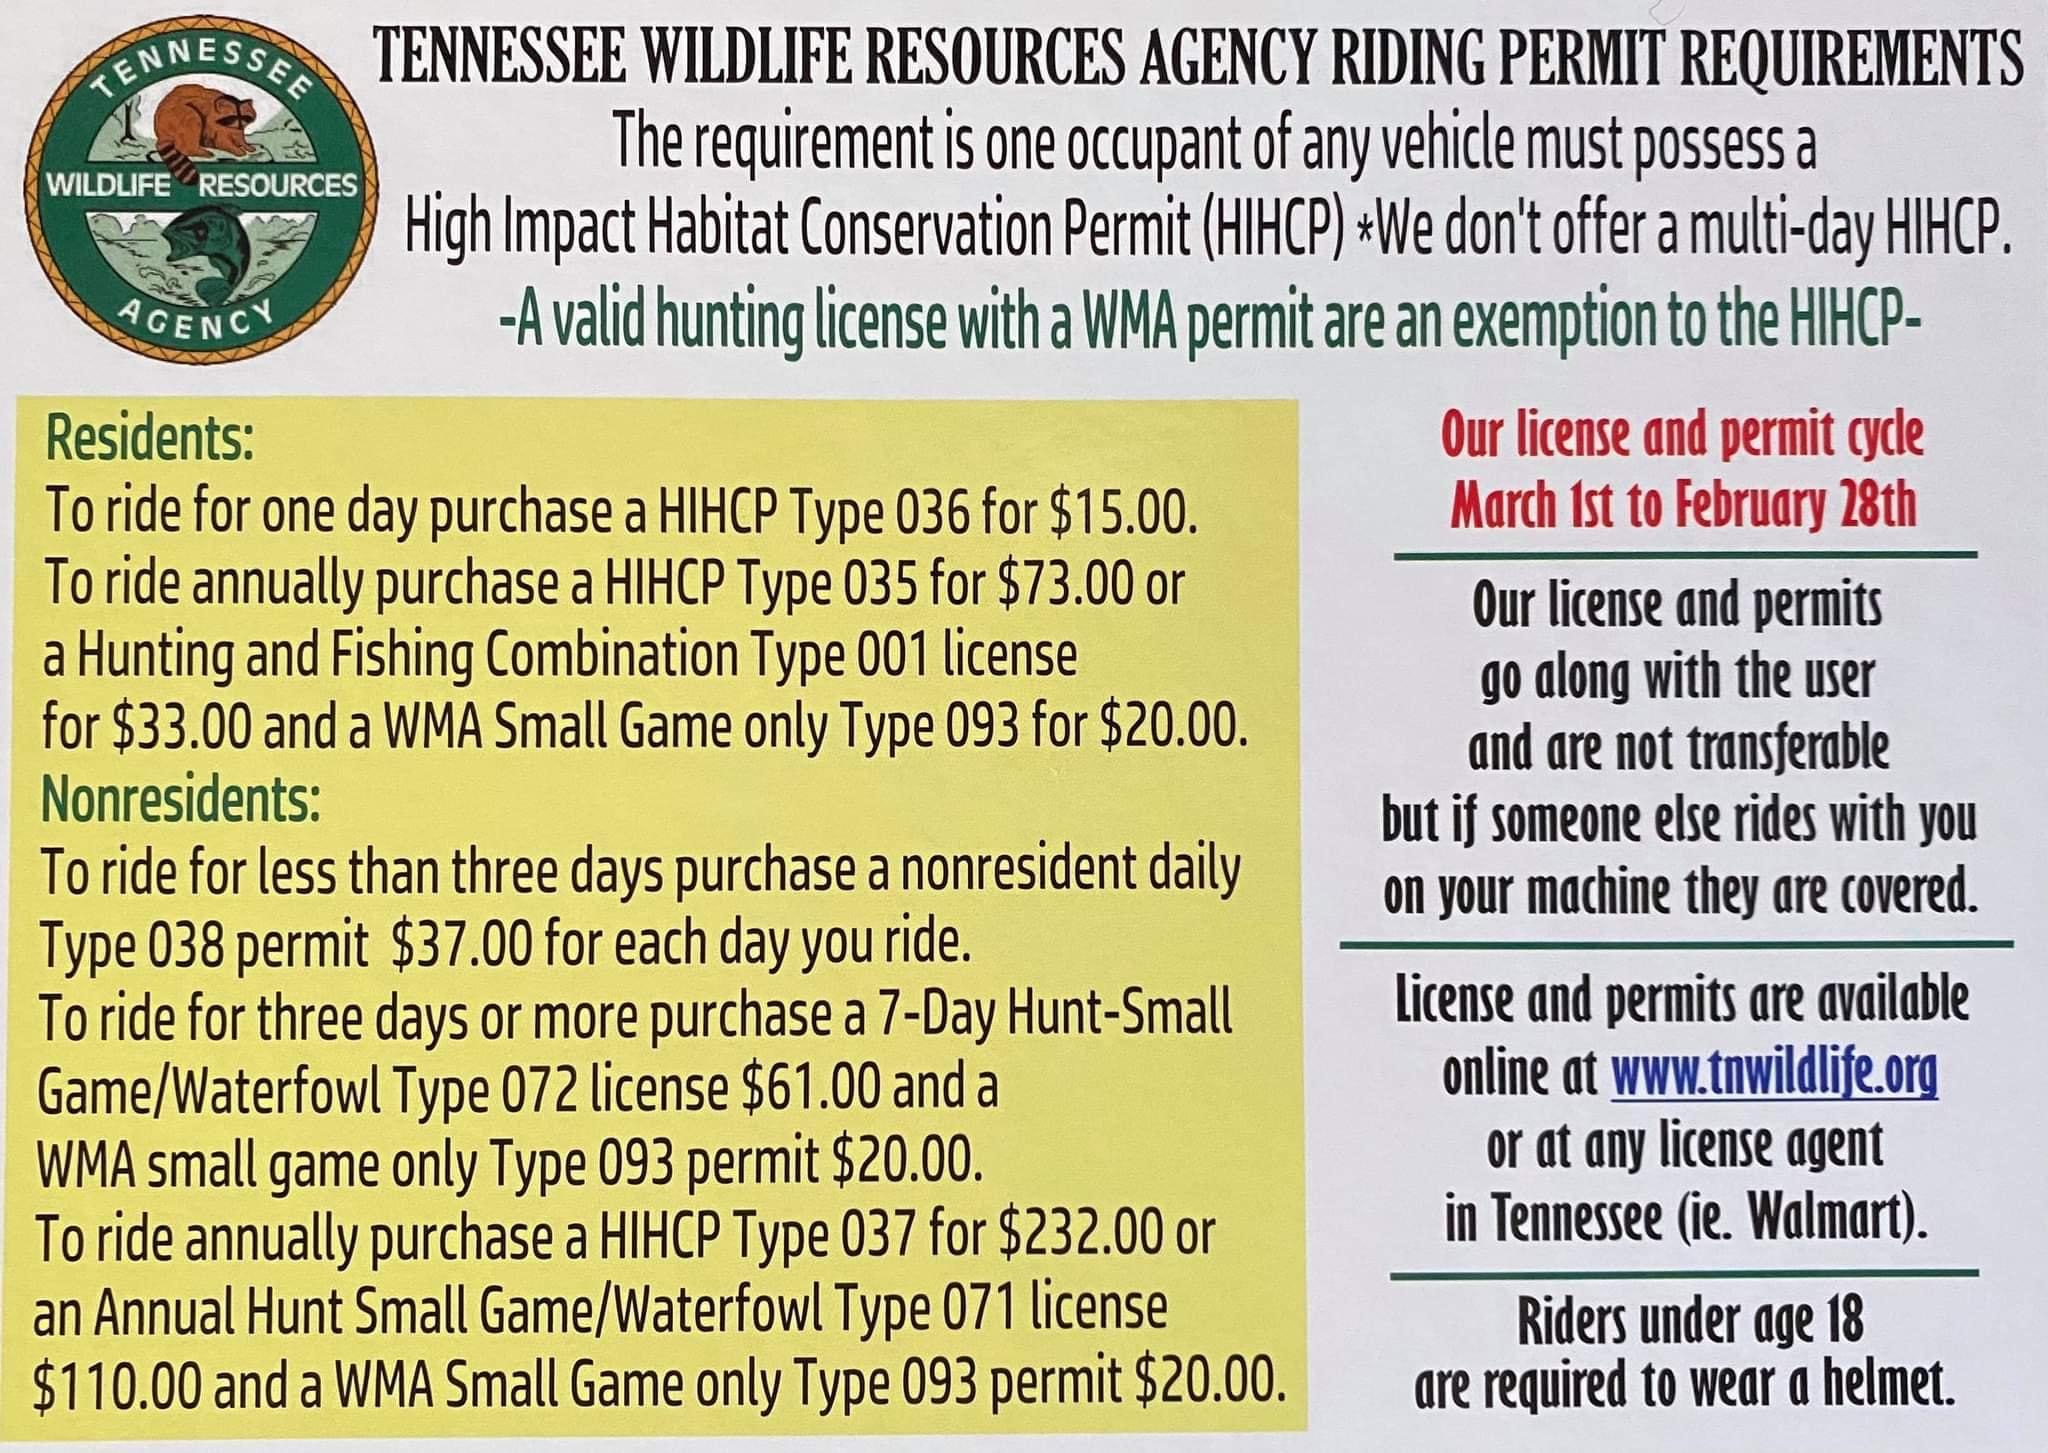 TWRA permit requirements